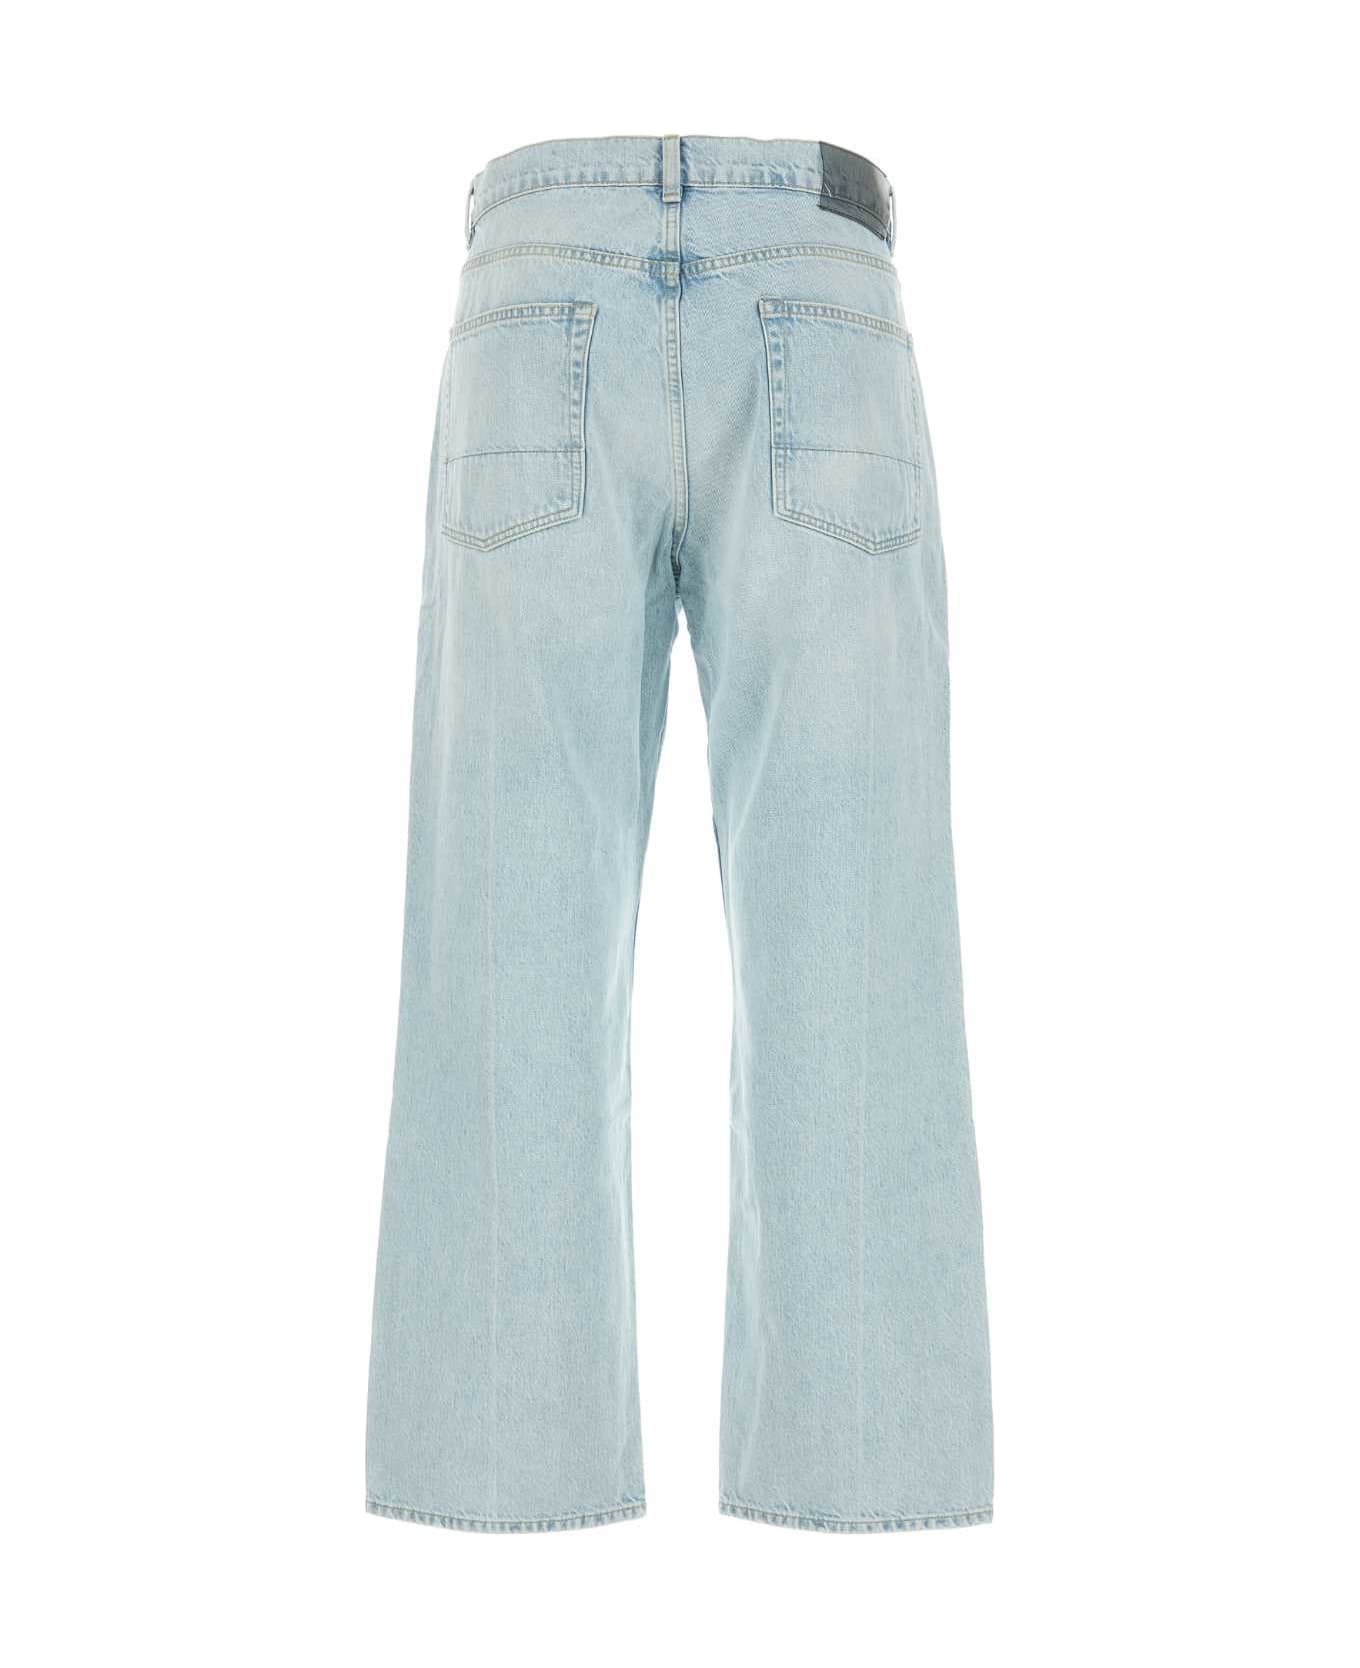 Our Legacy Light-blue Denim Jeans - SUPERLIGHTWASH デニム